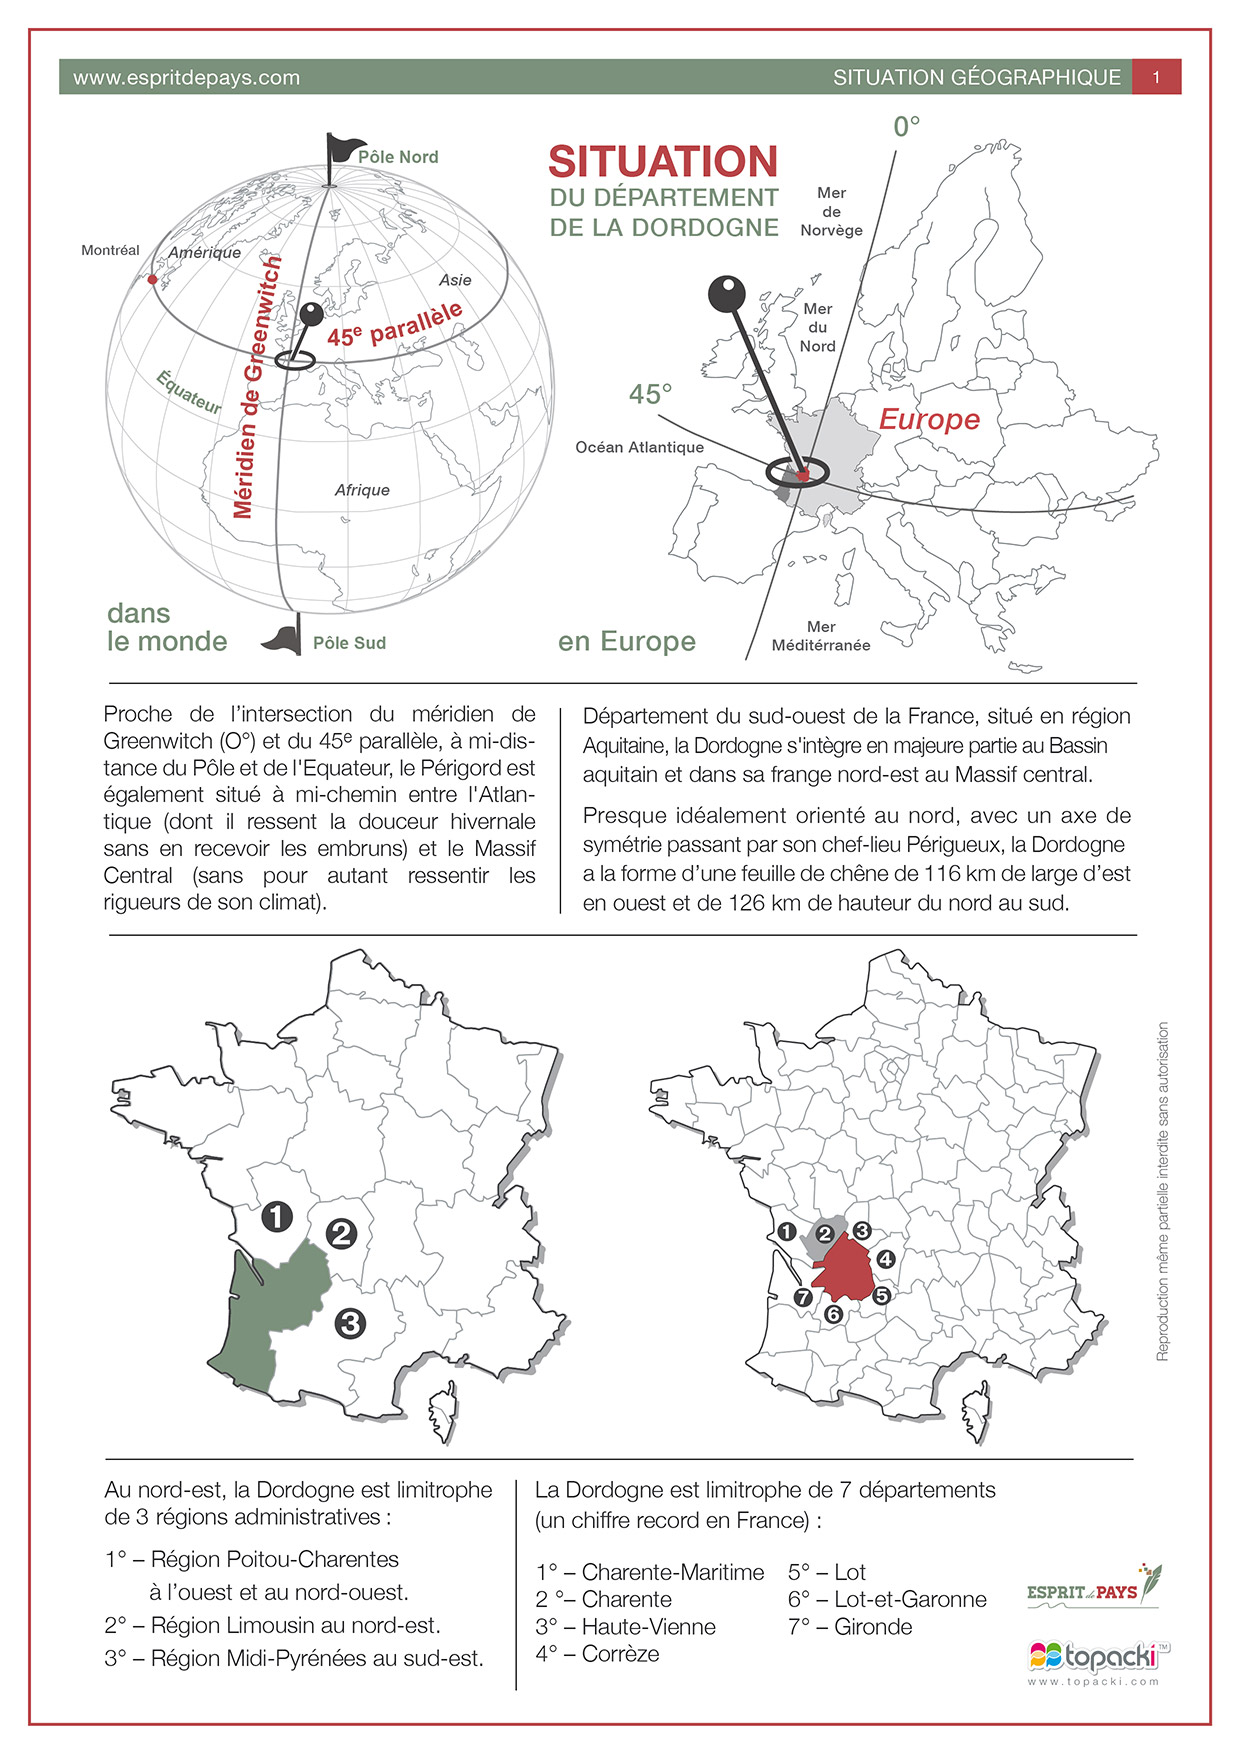 Cartographie : situation du département de la Dordogne